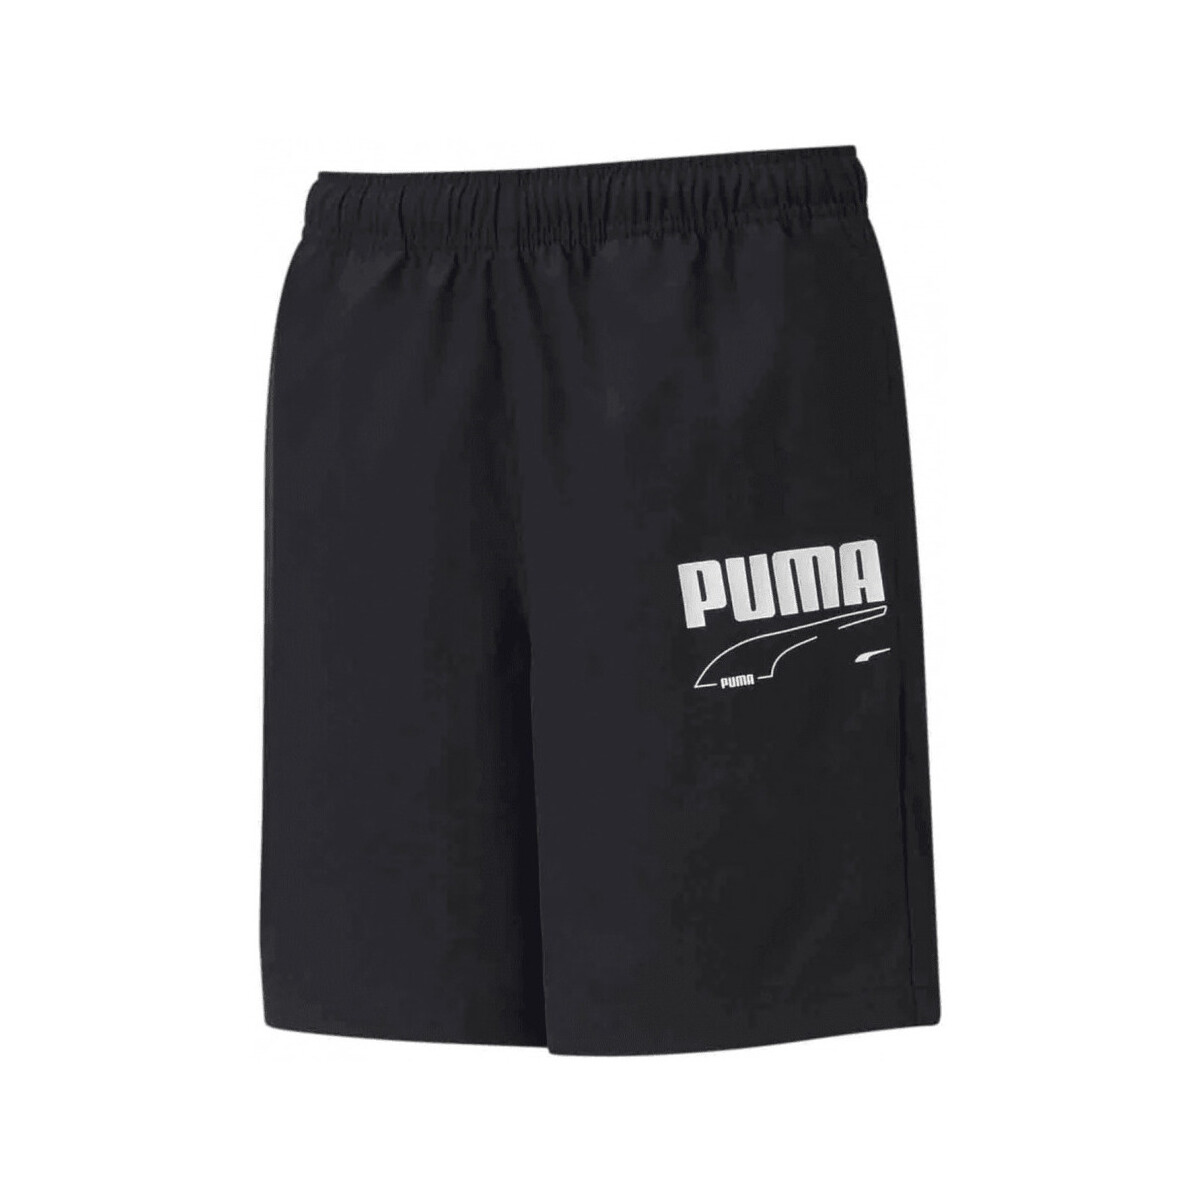 textil Pojkar Shorts / Bermudas Puma  Svart